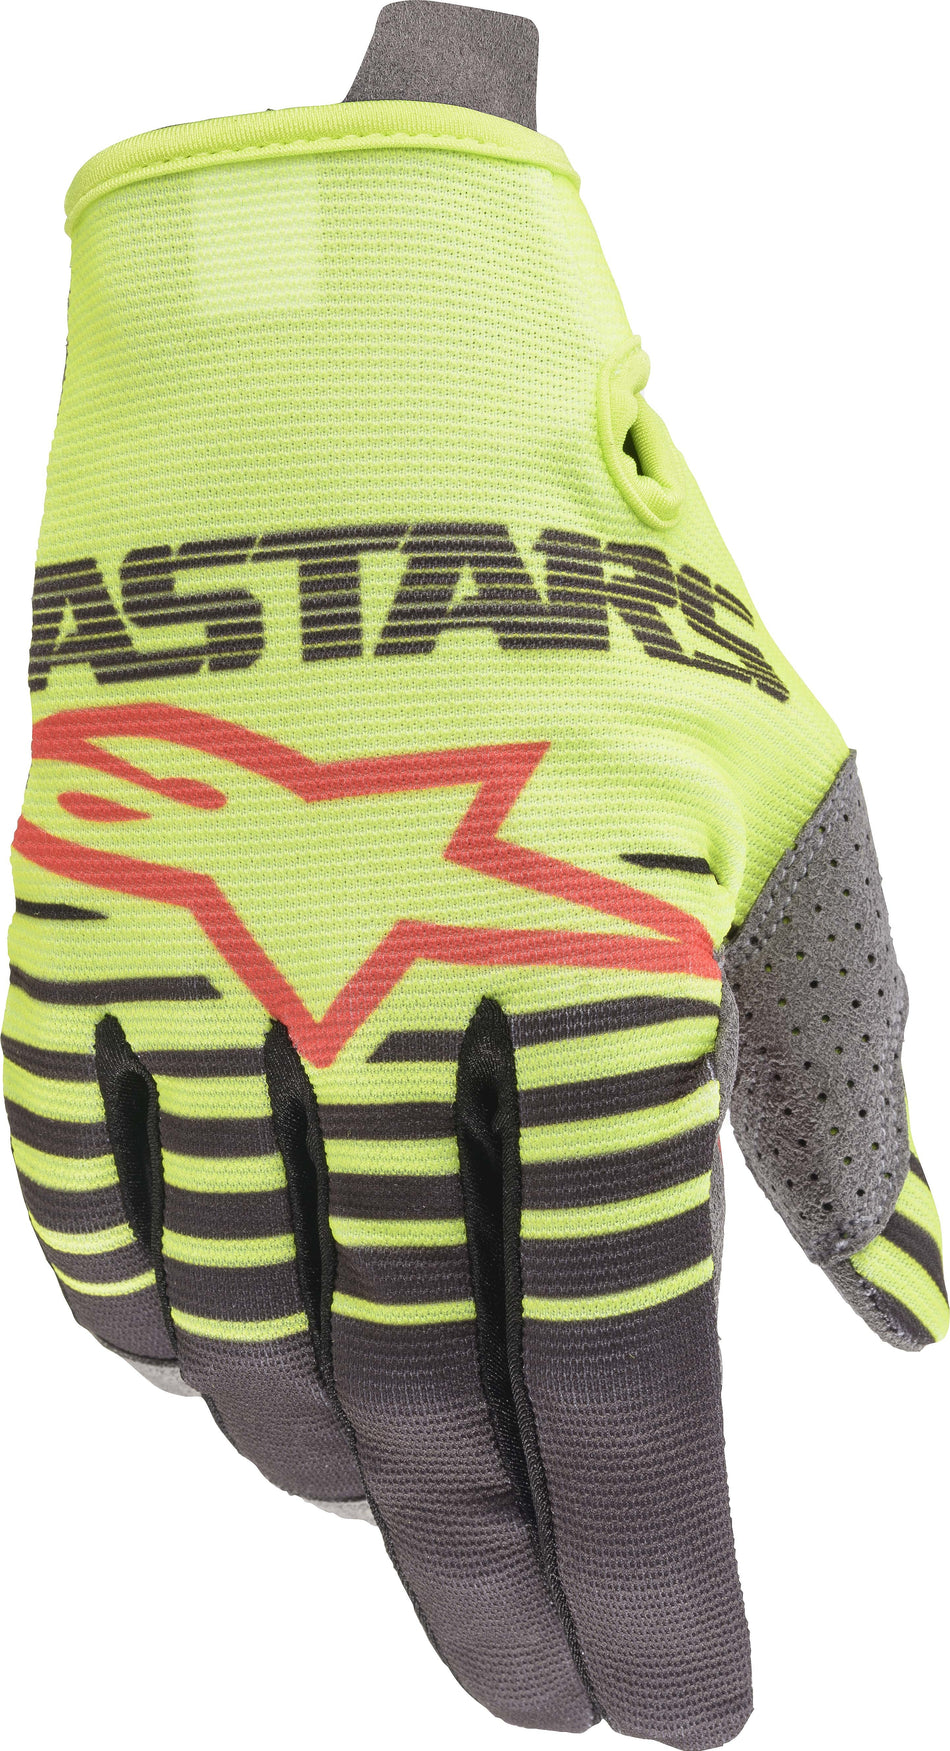 ALPINESTARS Radar Gloves Yellow/Anthracite Sm 3561820-559-S